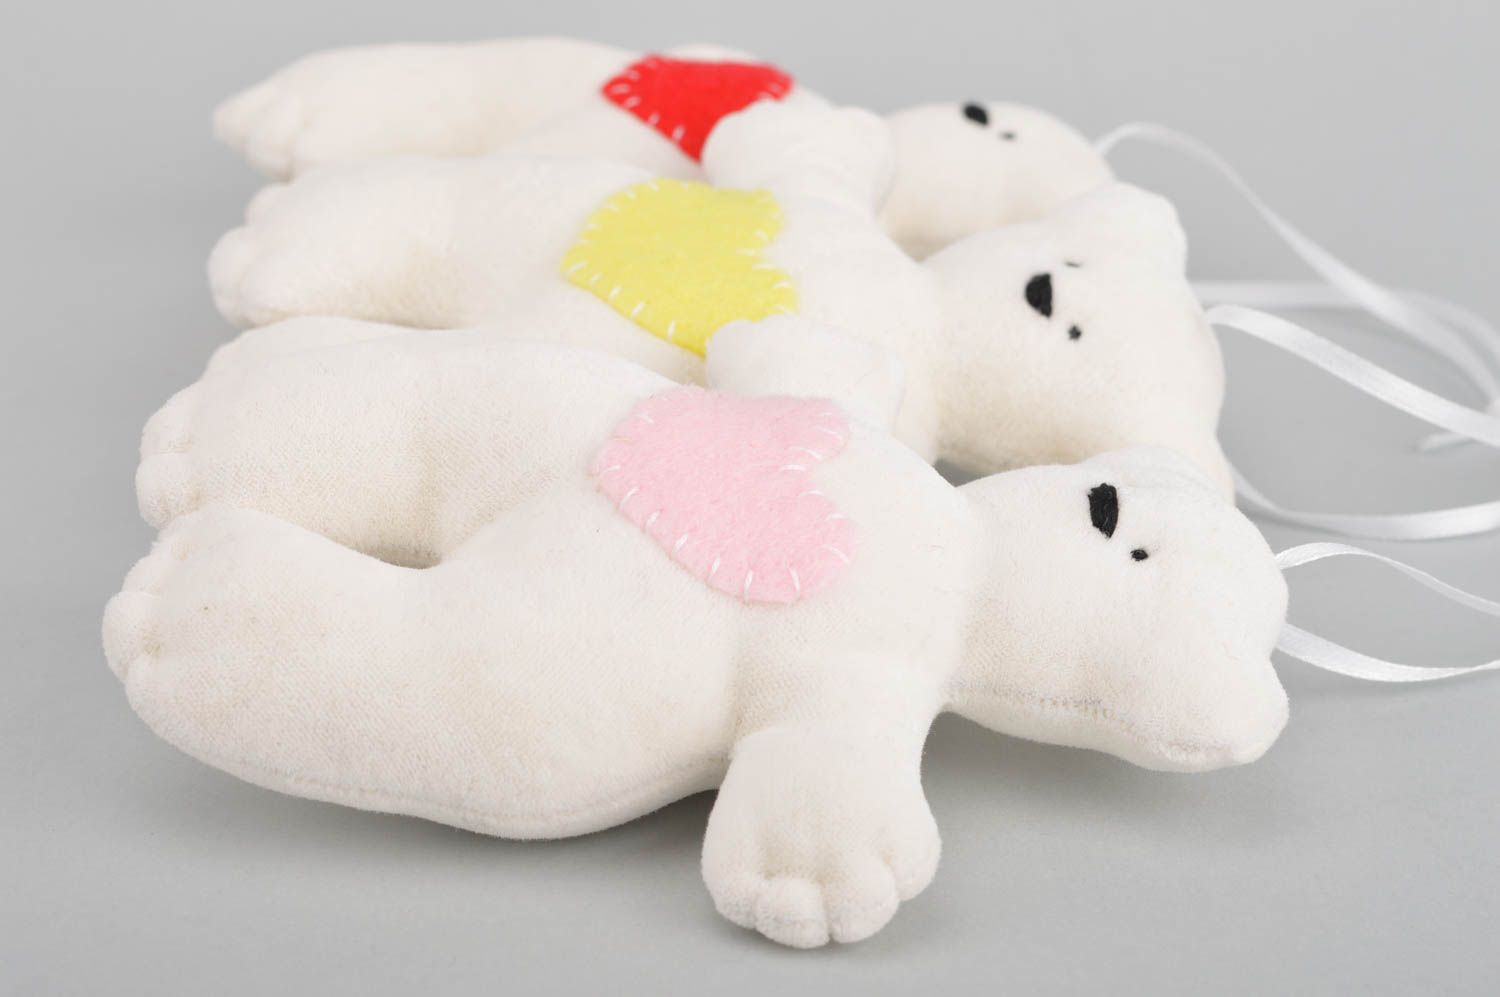 Комплект авторских игрушек ручной работы в виде белых мишек 3 штуки для декора фото 5